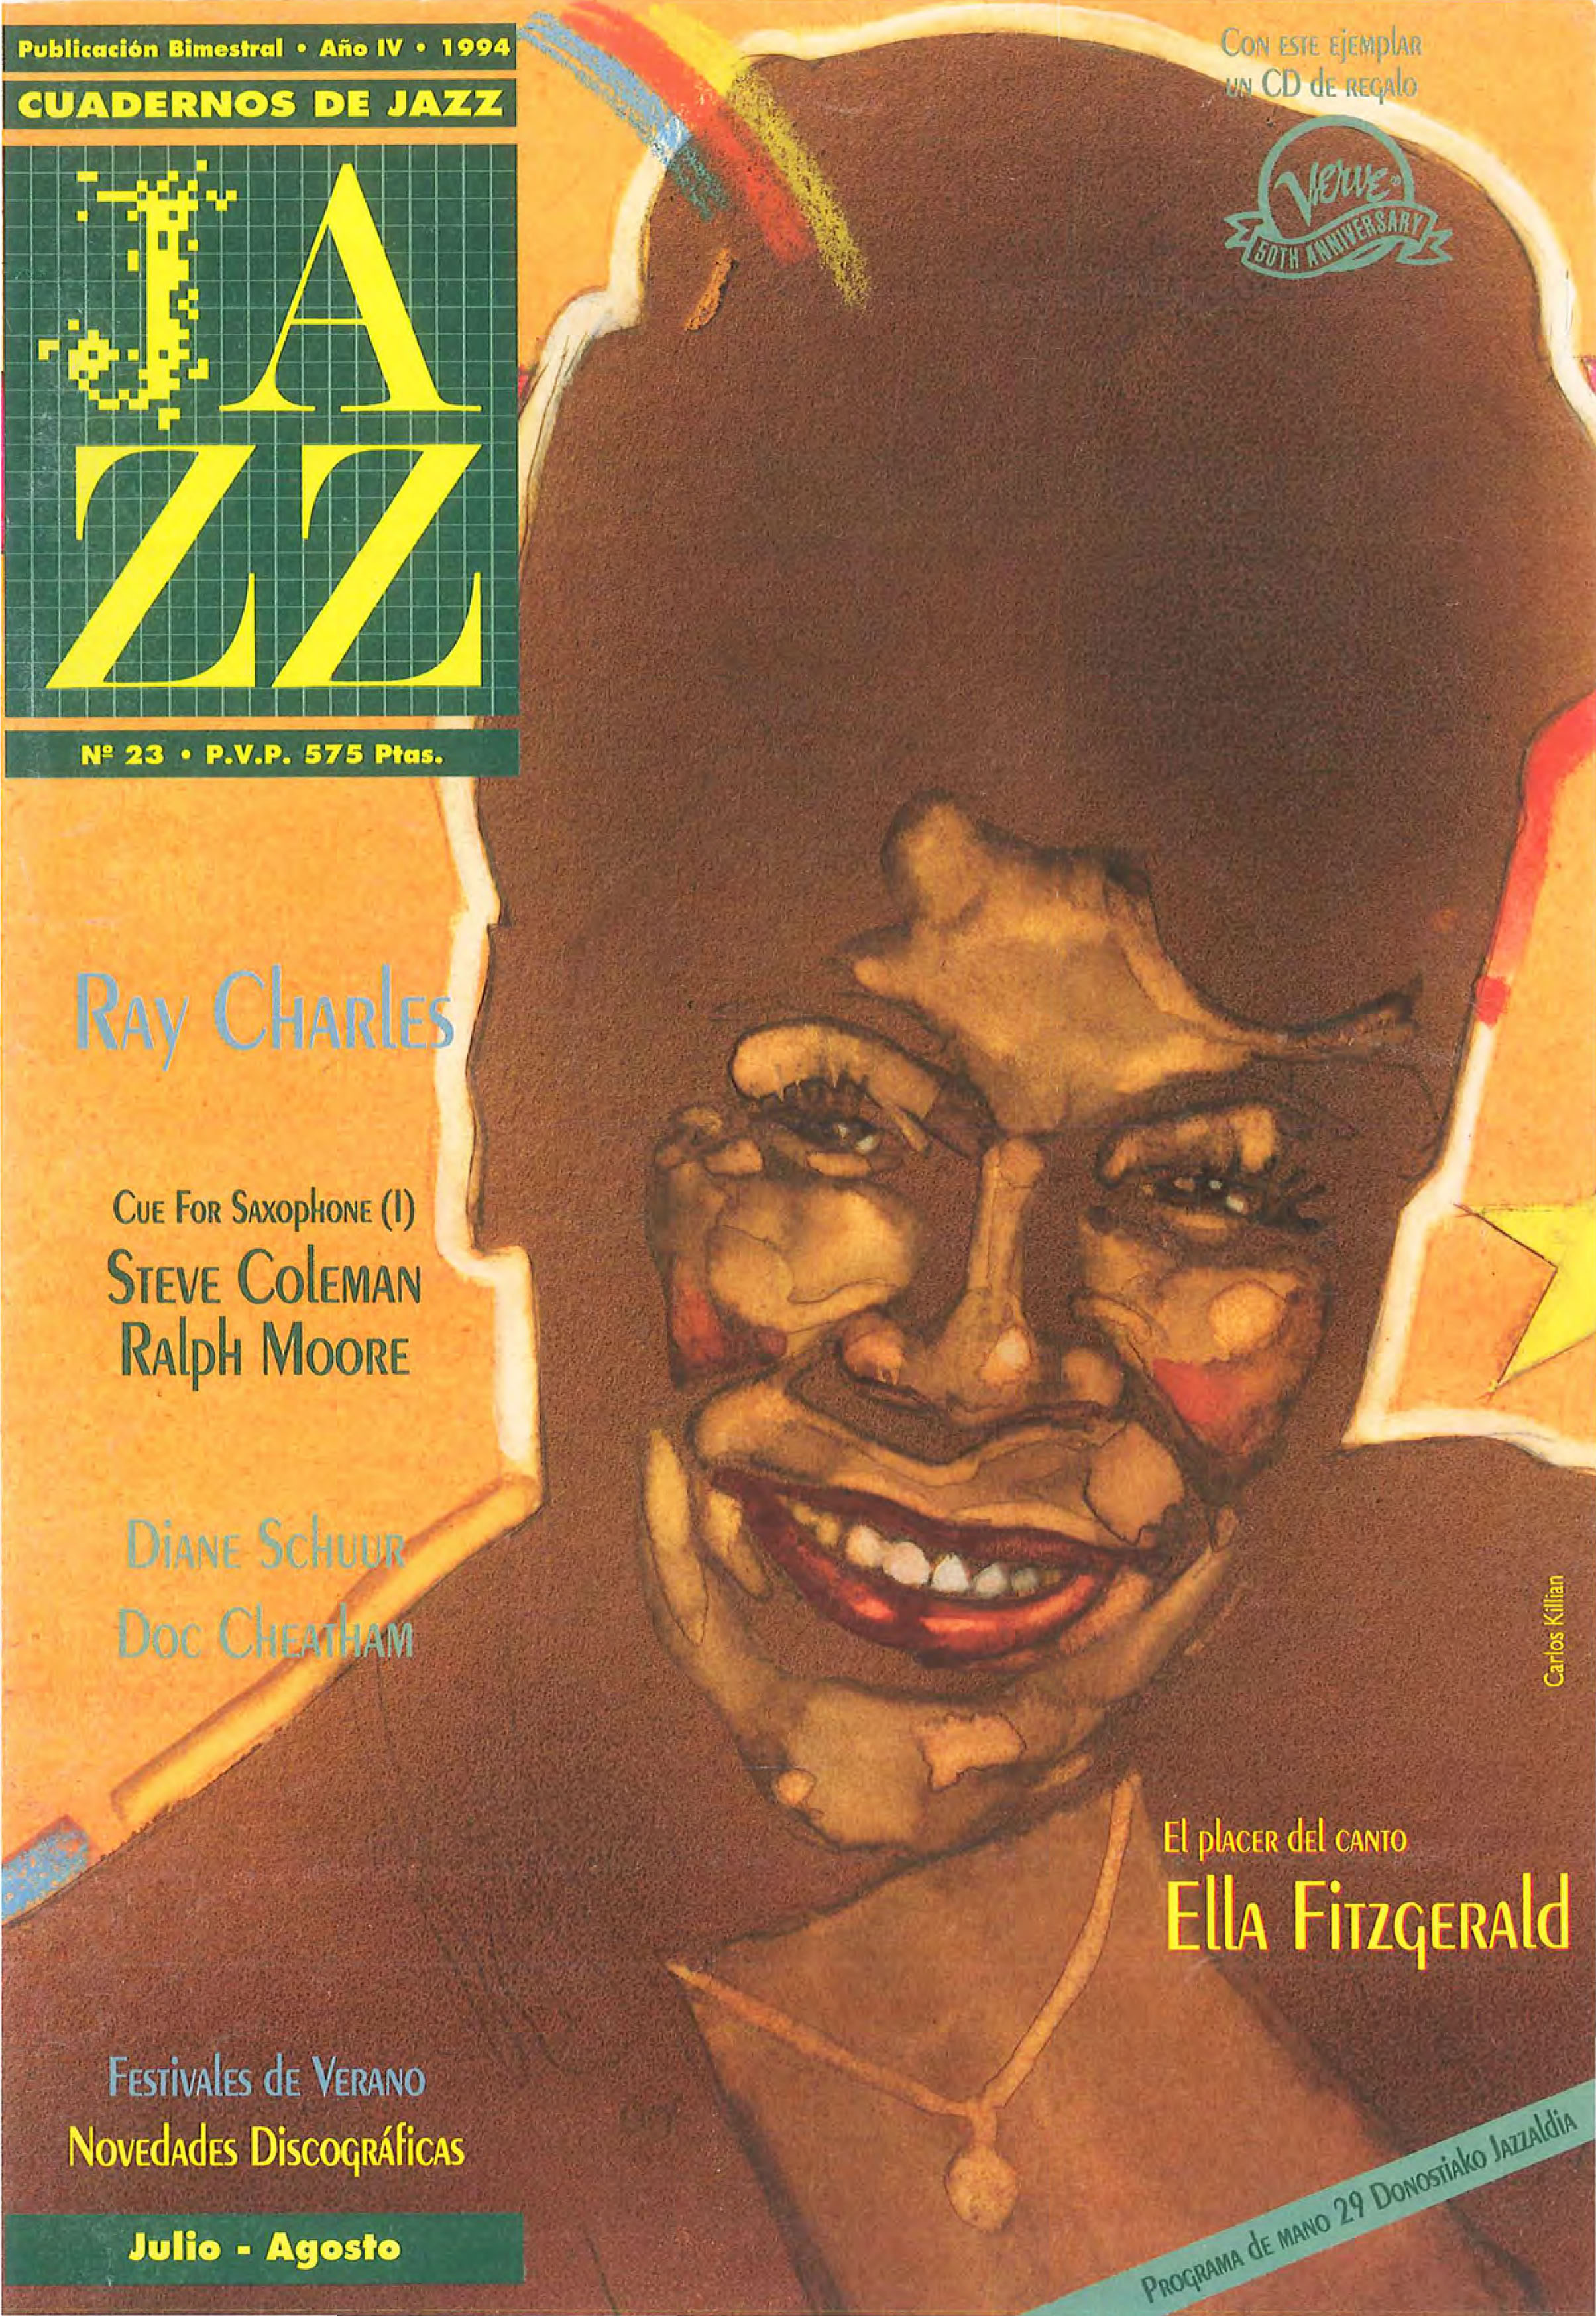 Cubierta del número 23 de la revista Cuadernos de Jazz